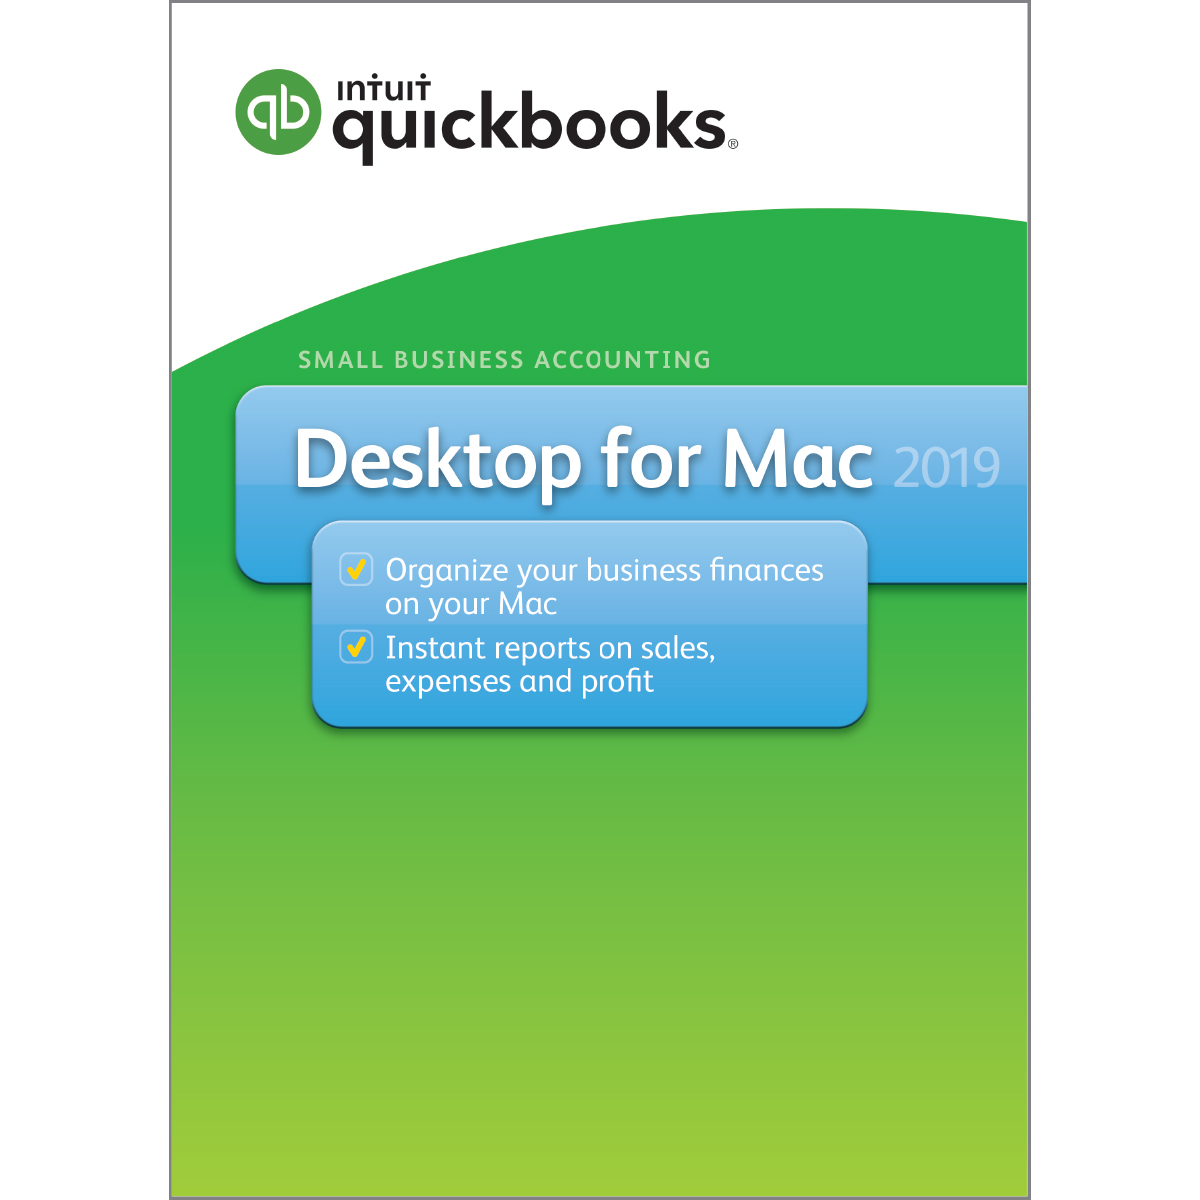 quickbooks mac 2019 torrent cracked